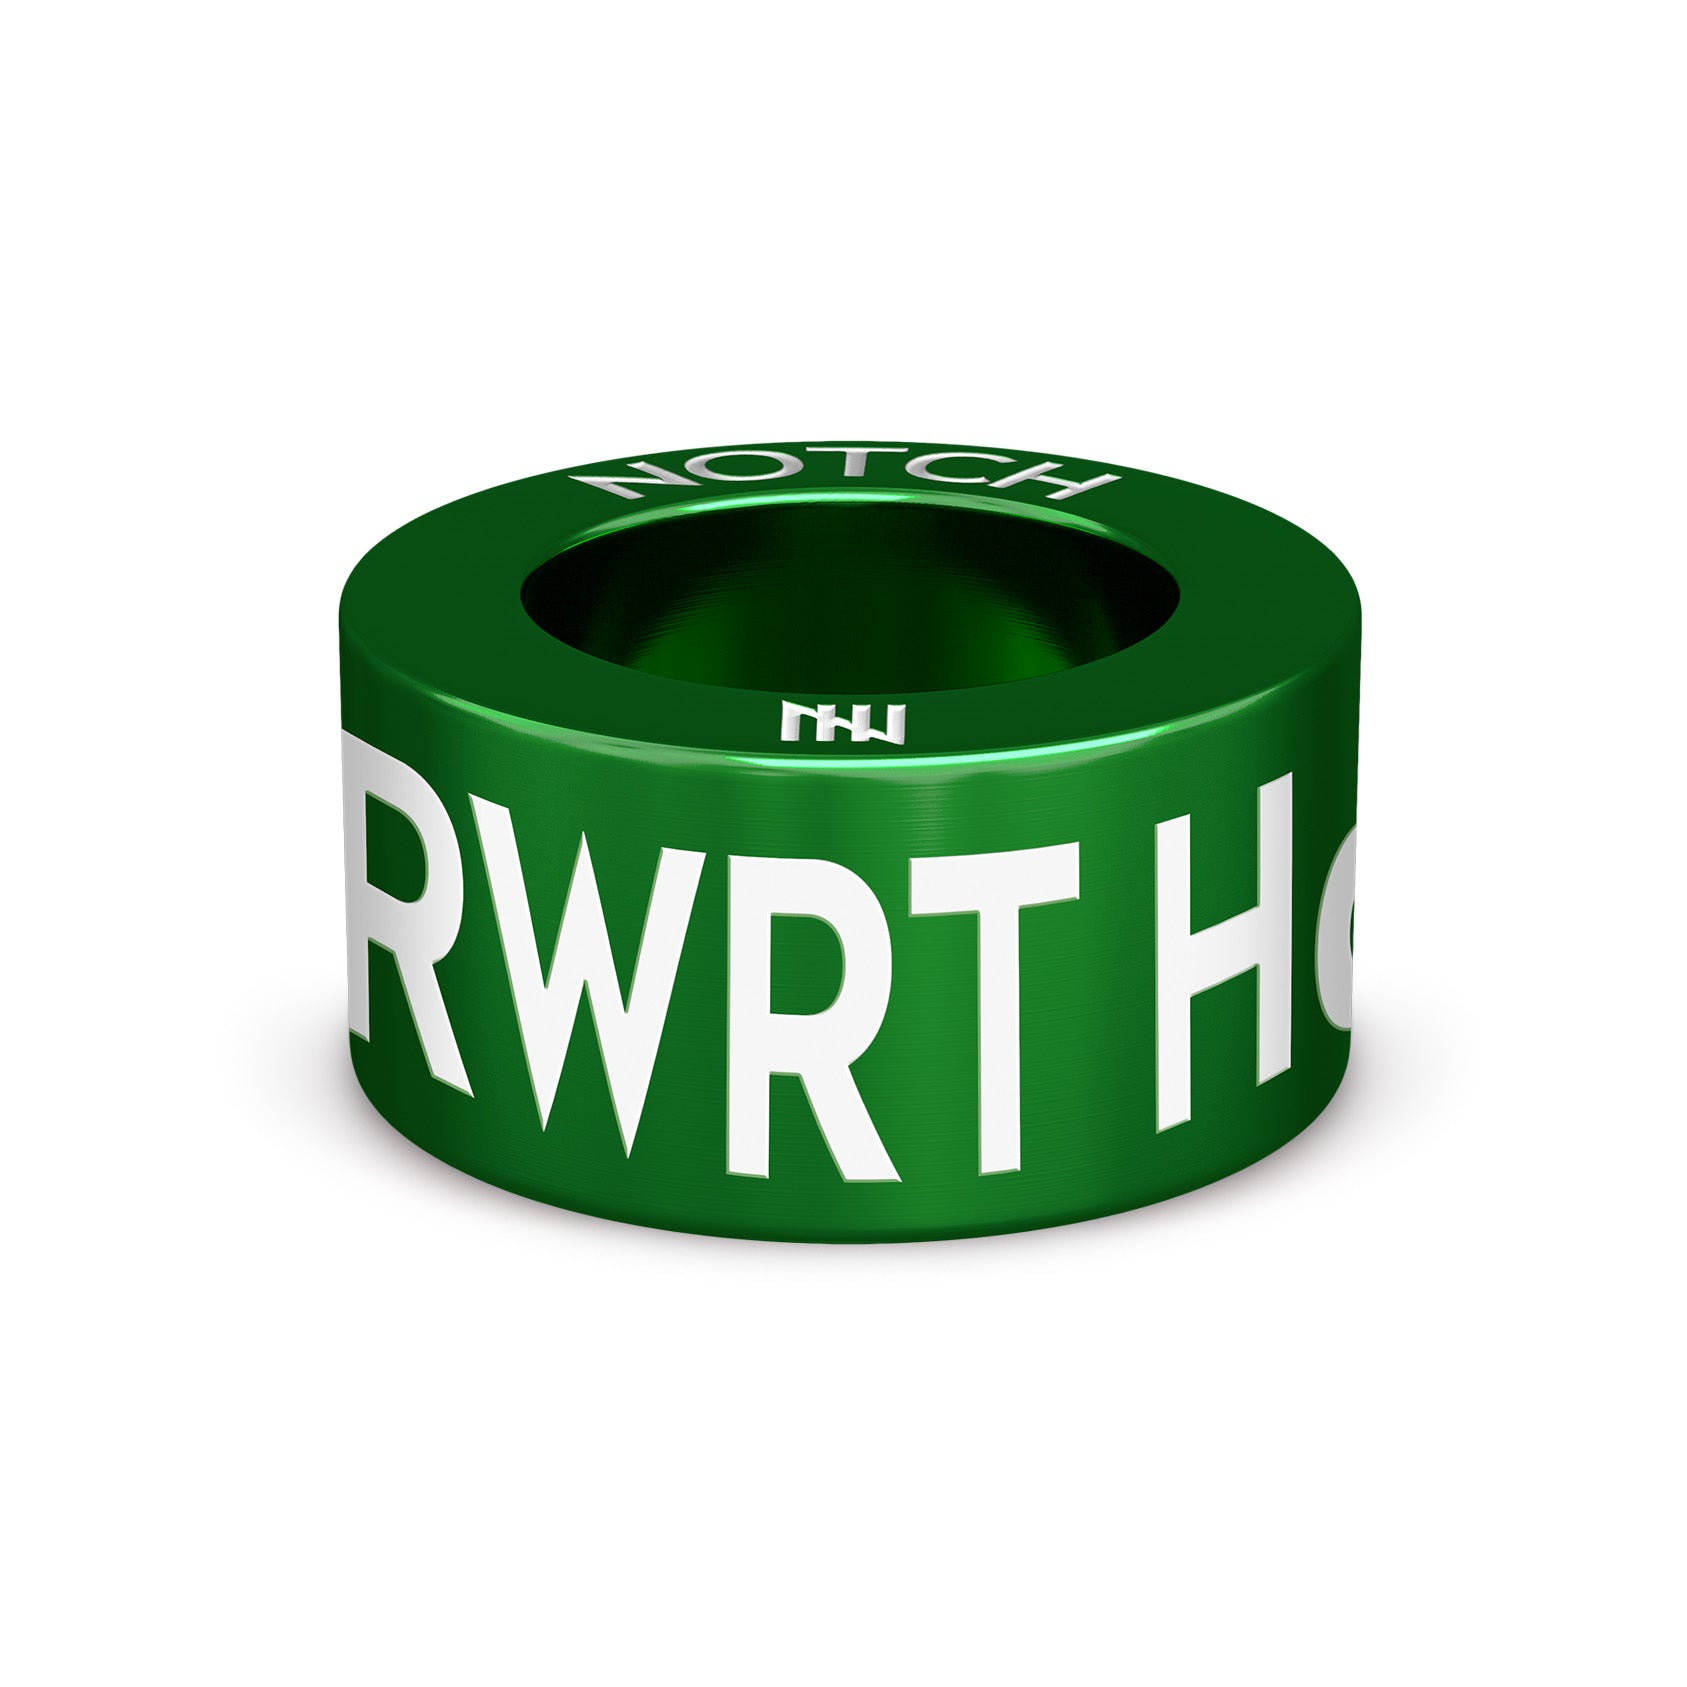 RWRT Half Marathon NOTCH Charm